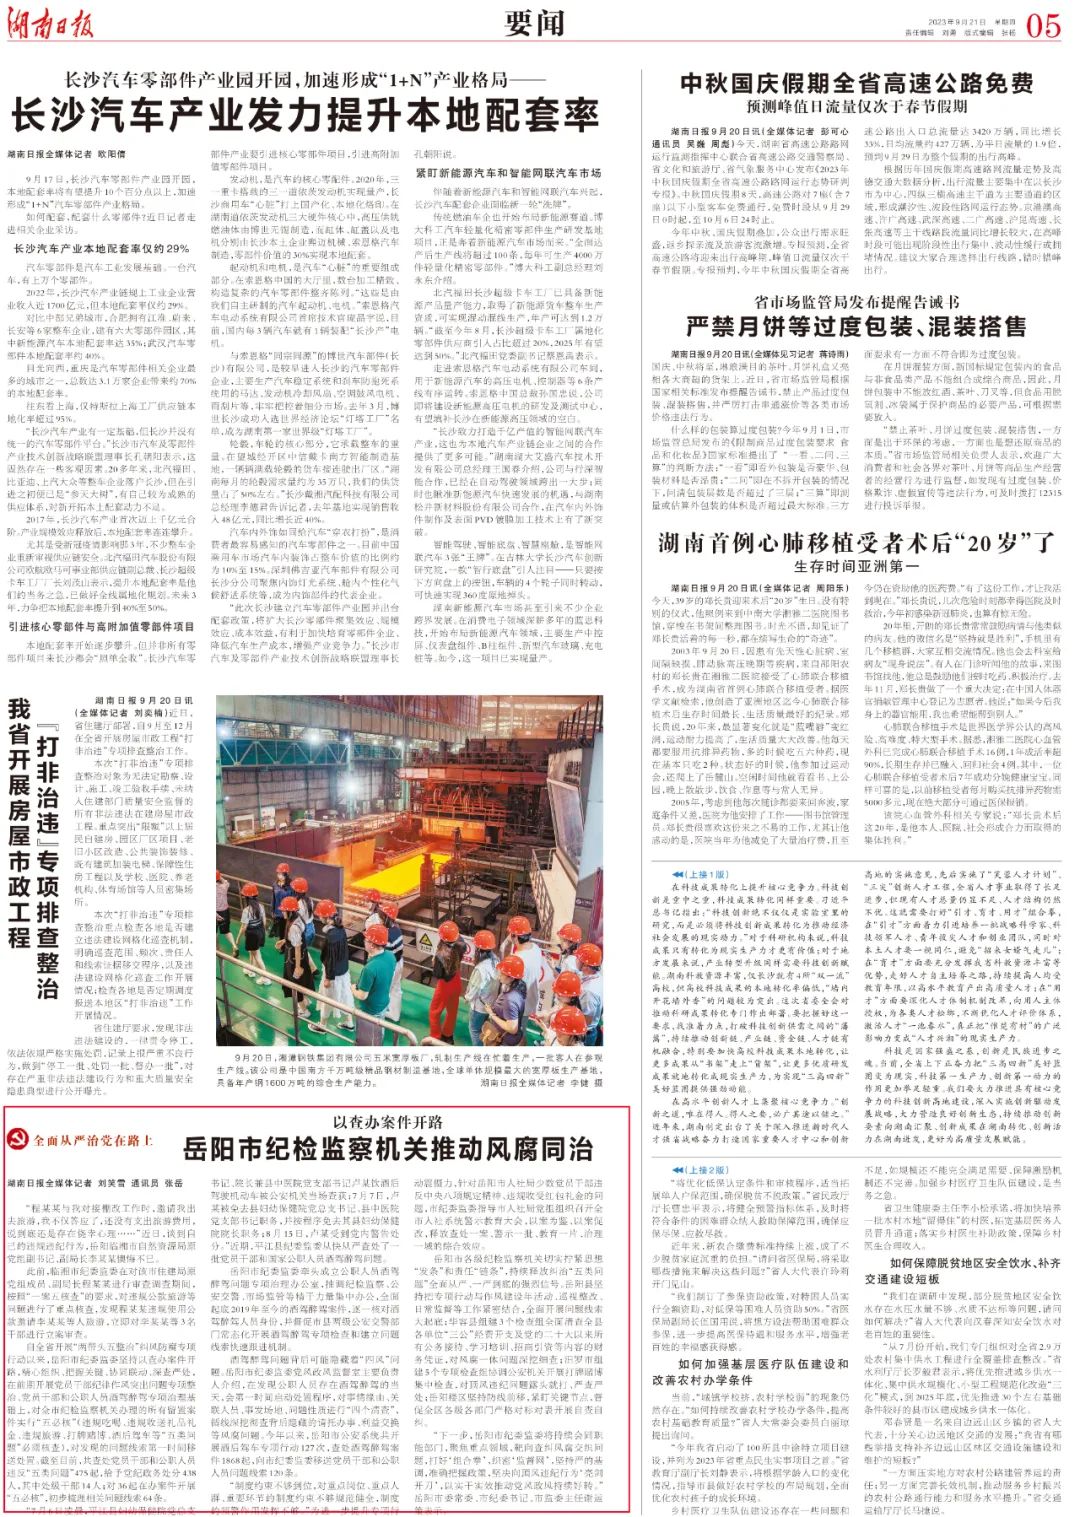 湖南日报推介岳阳市纪检监察机关推动风腐同治工作做法